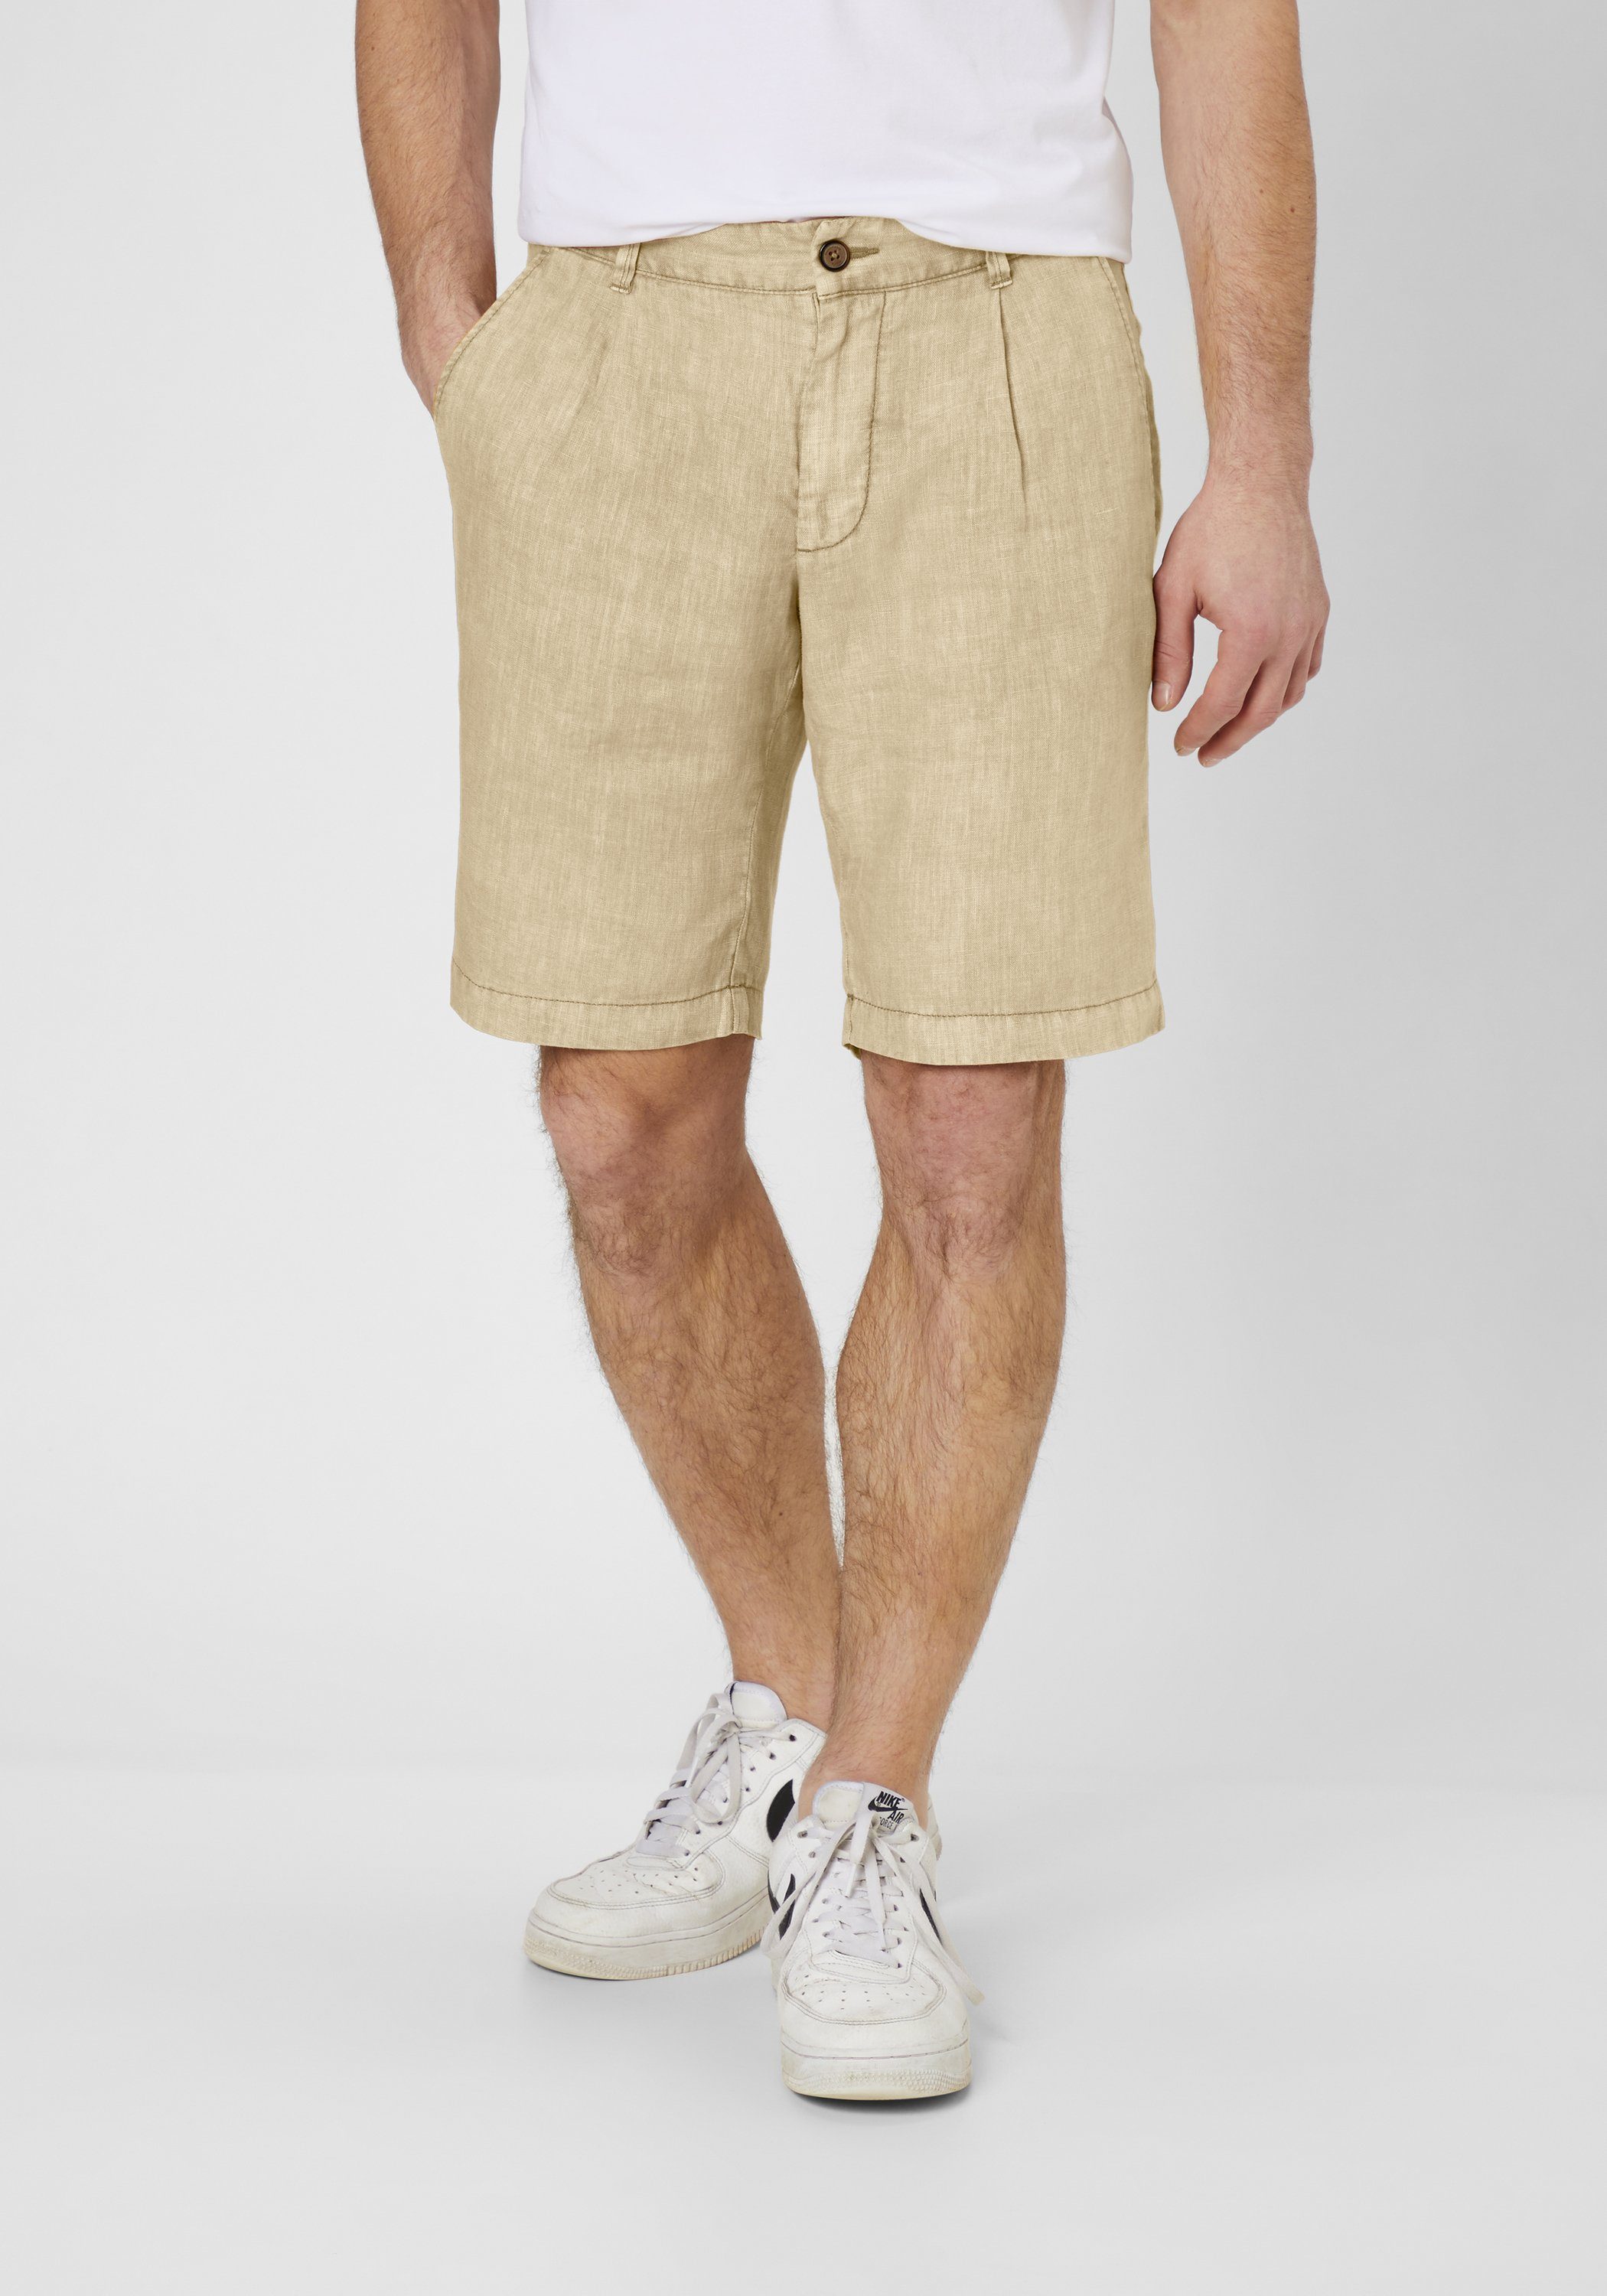 S4 Jackets Bermudas MAUI 2 Leichte Modern Fit Shorts aus Leinen straw